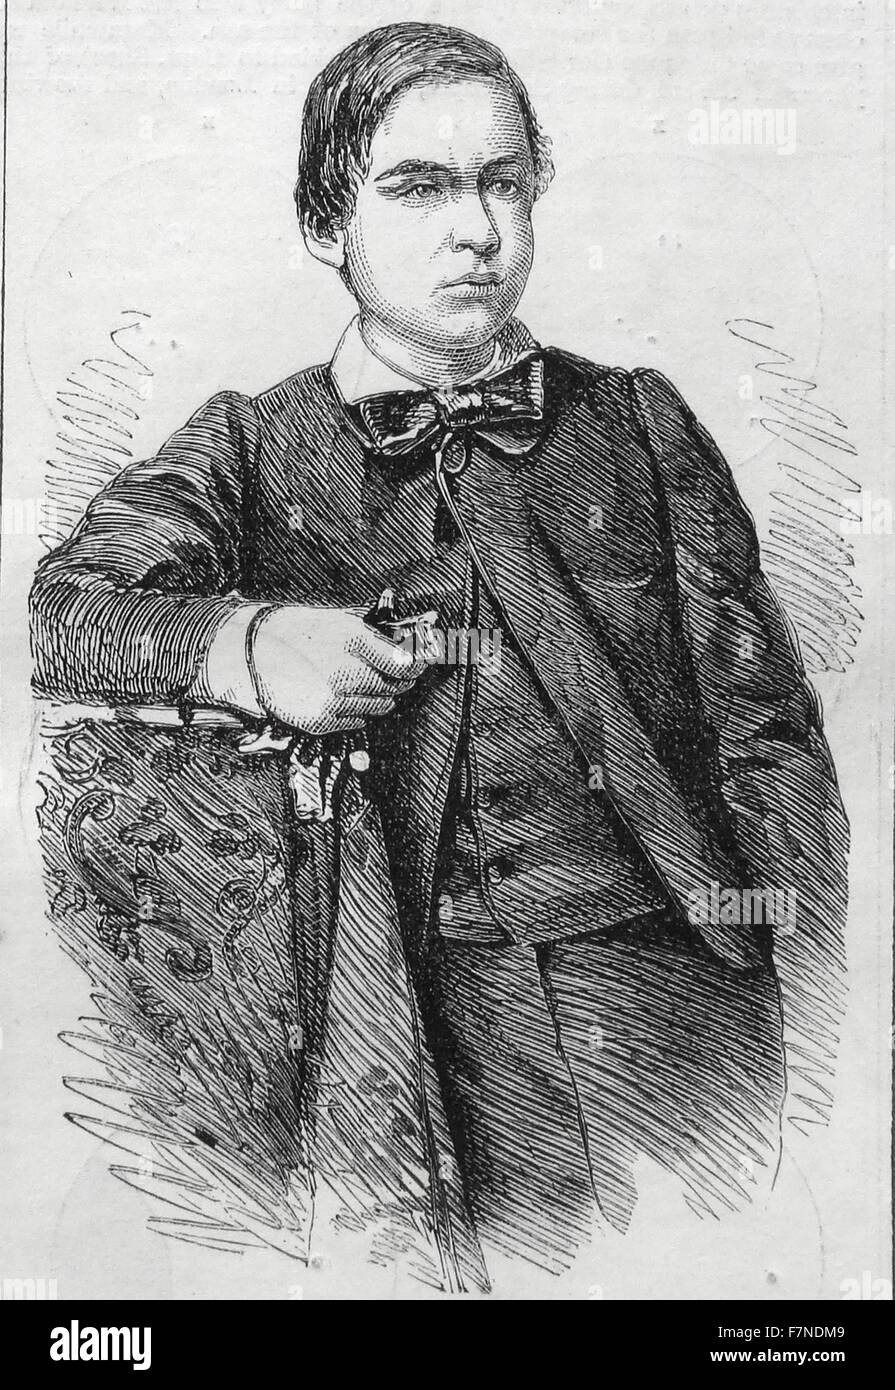 Ricciotti, youngest son of General Garibaldi. Stock Photo